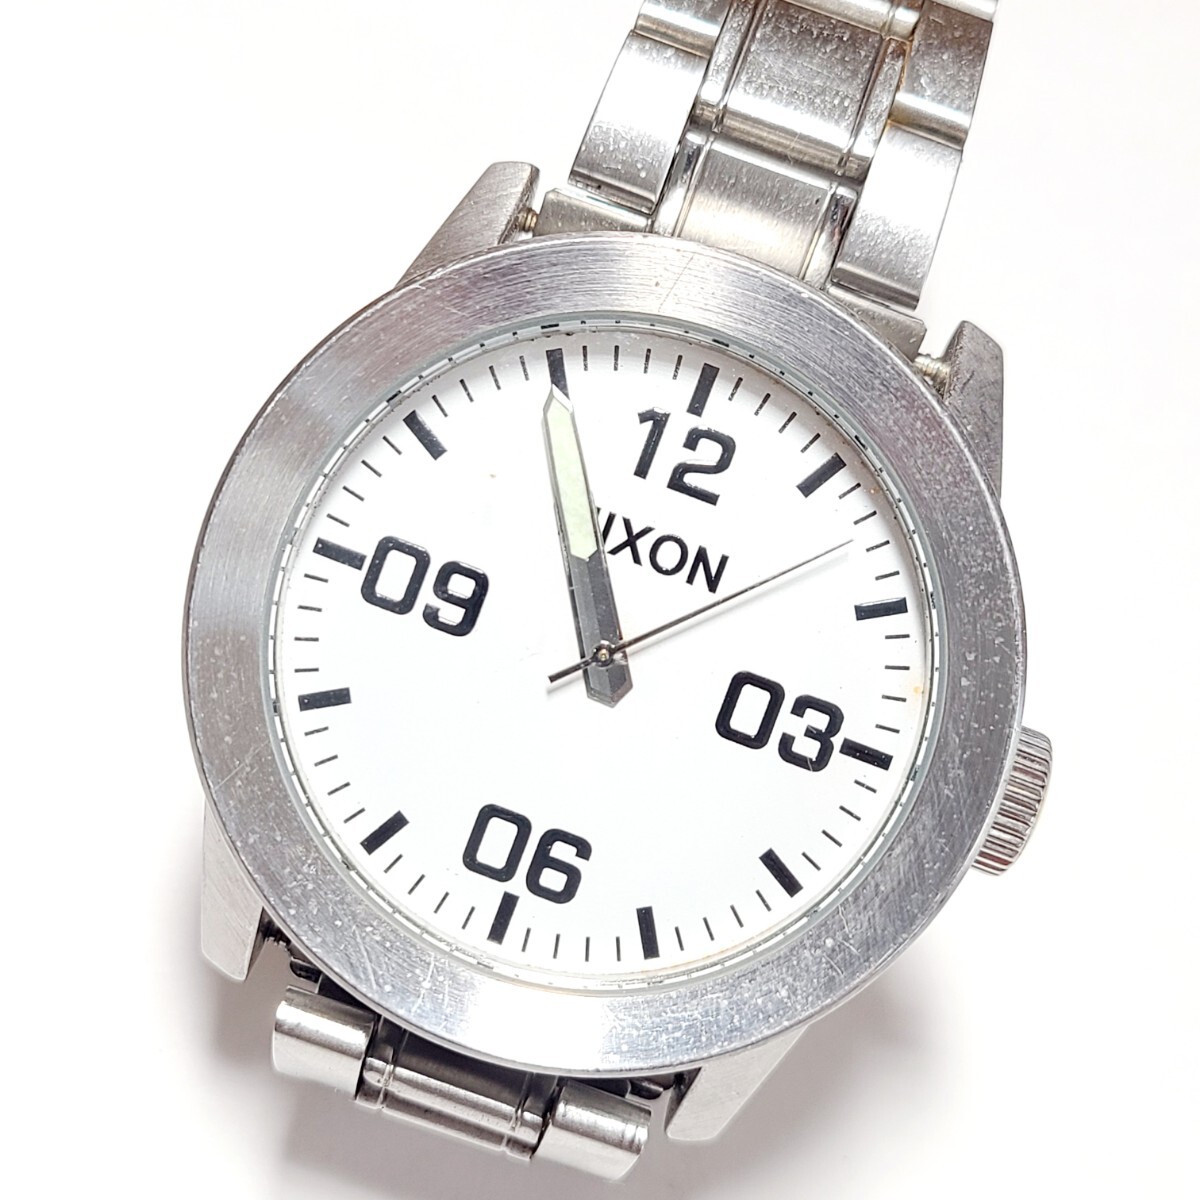 CM165LL NIXON ニクソン IN THE HOTZONE PRIVATE 腕時計 メンズウォッチ ホワイト文字盤 シルバー 100M防水 クォーツ